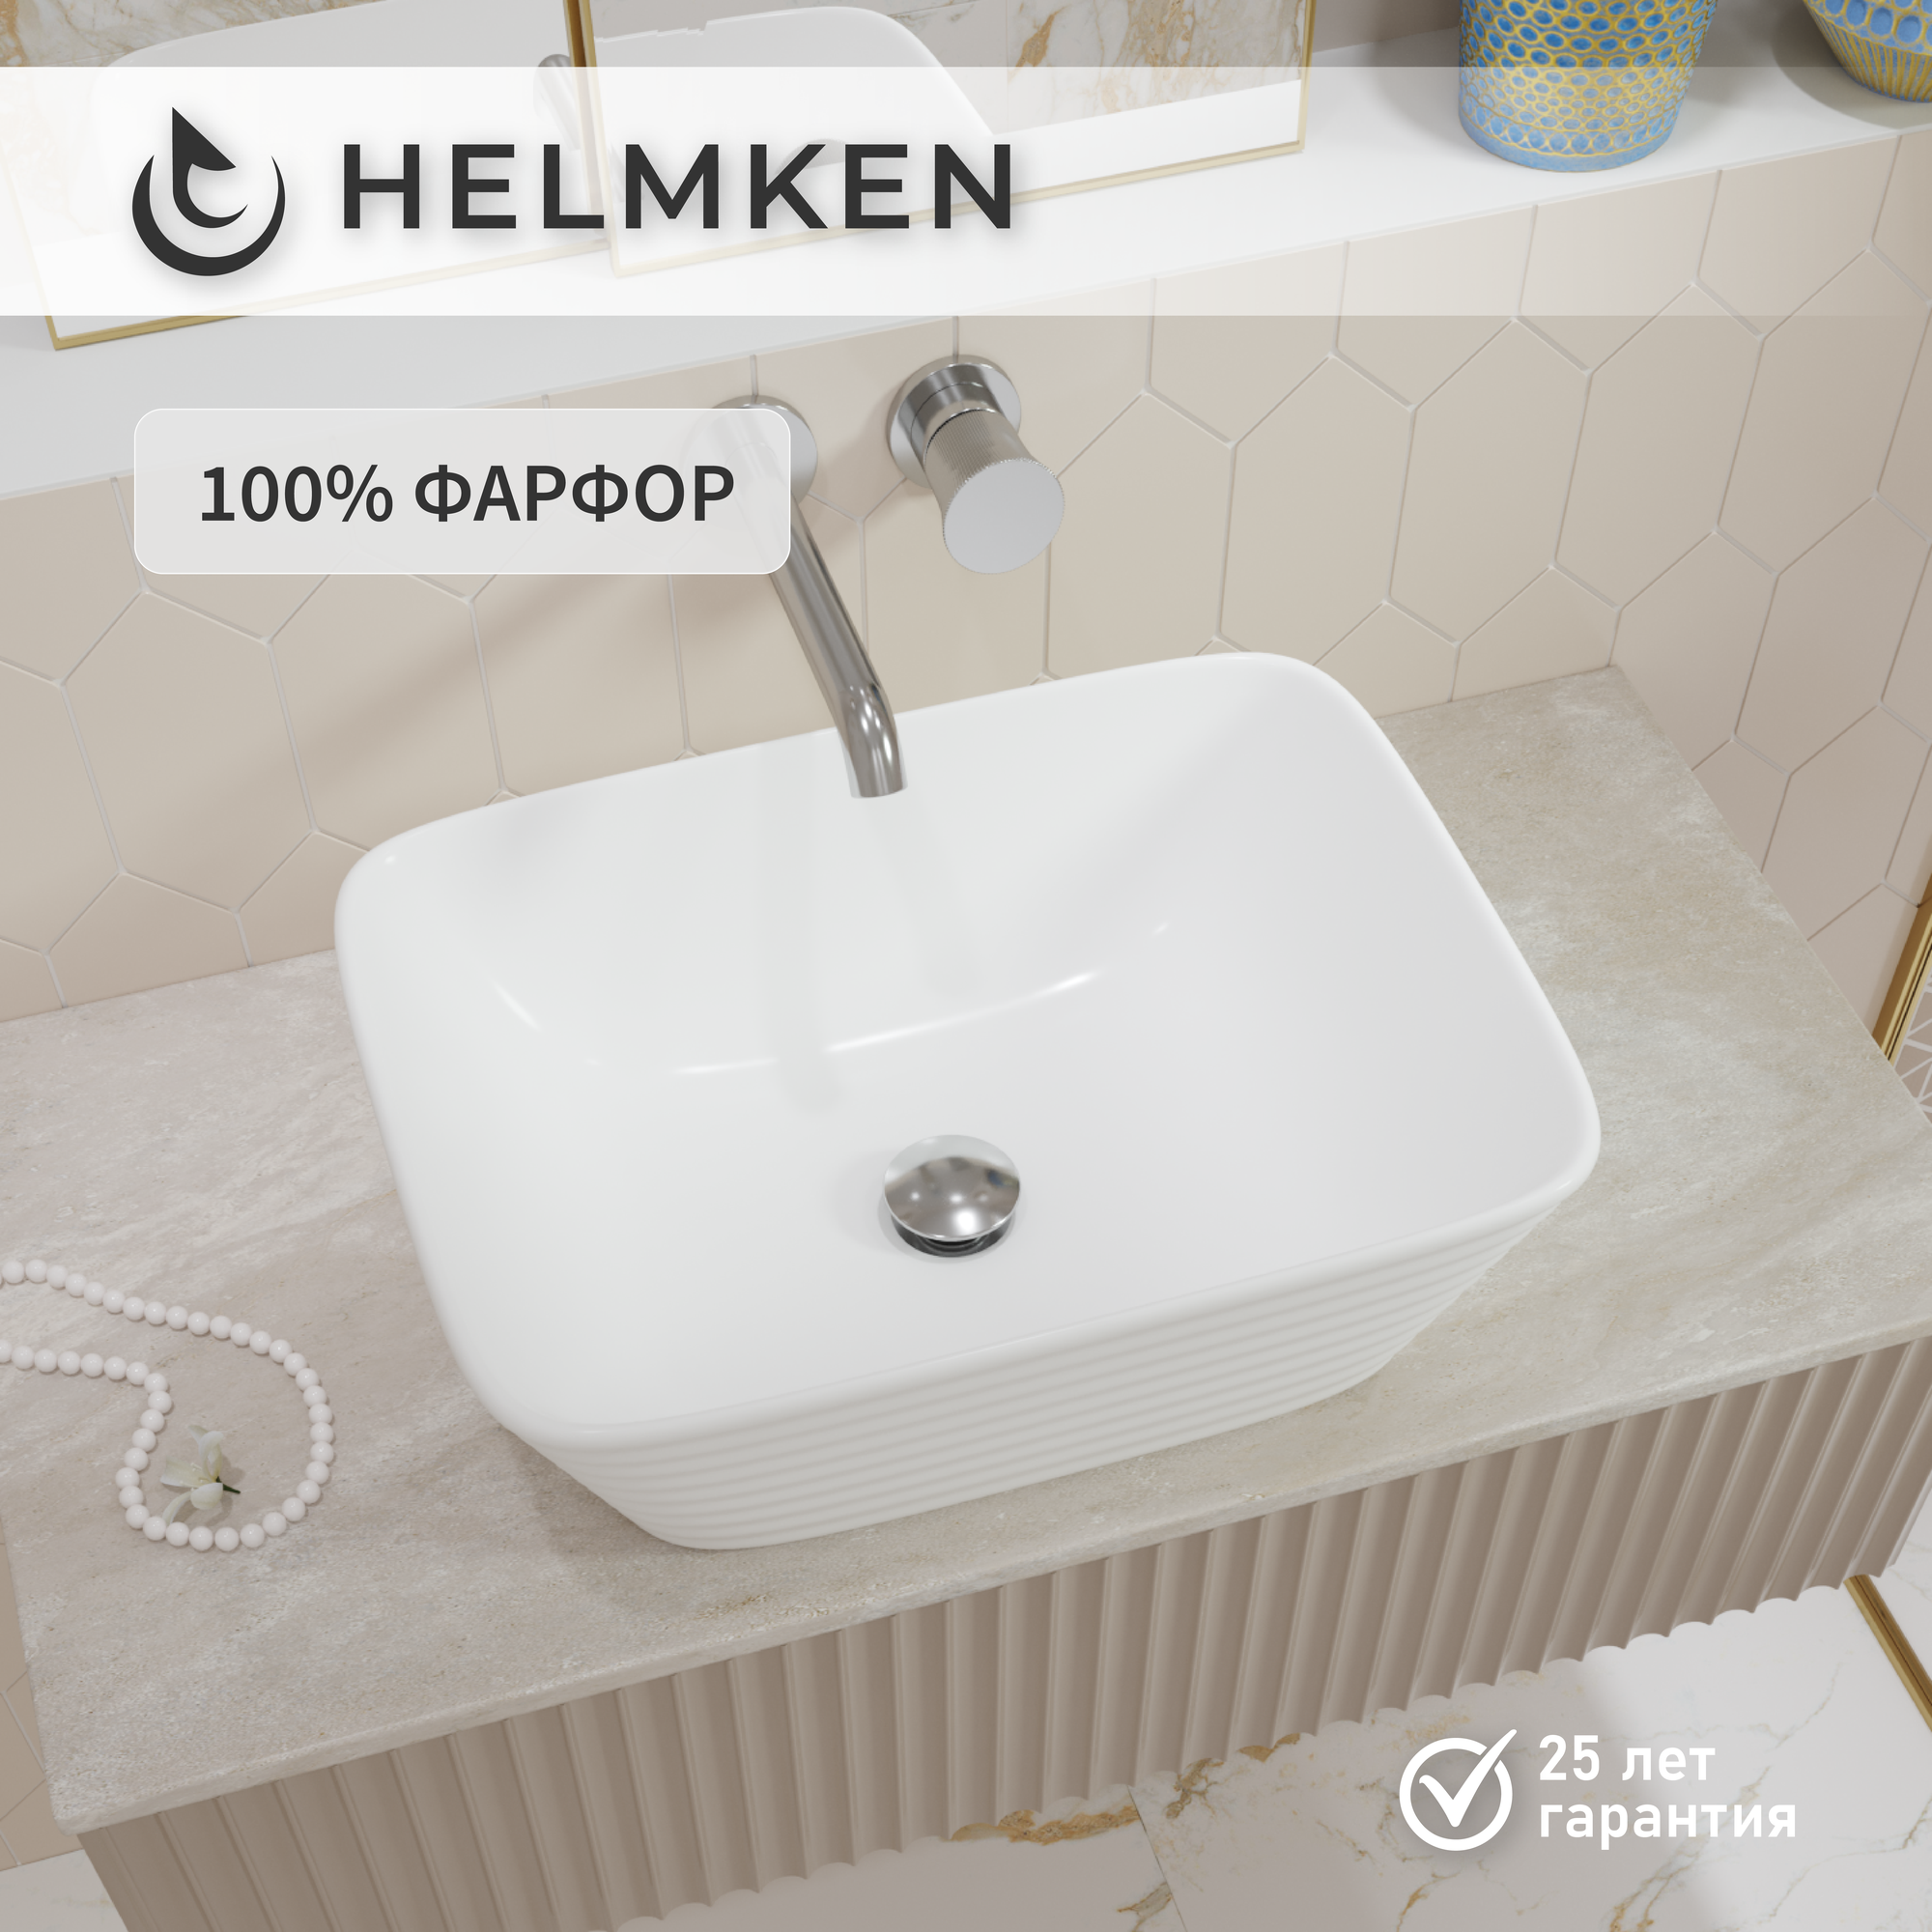 Накладная раковина в ванную Helmken 44350000: раковина на столешницу, умывальник прямоугольный из фарфора 50 см, белый цвет, гарантия 25 лет